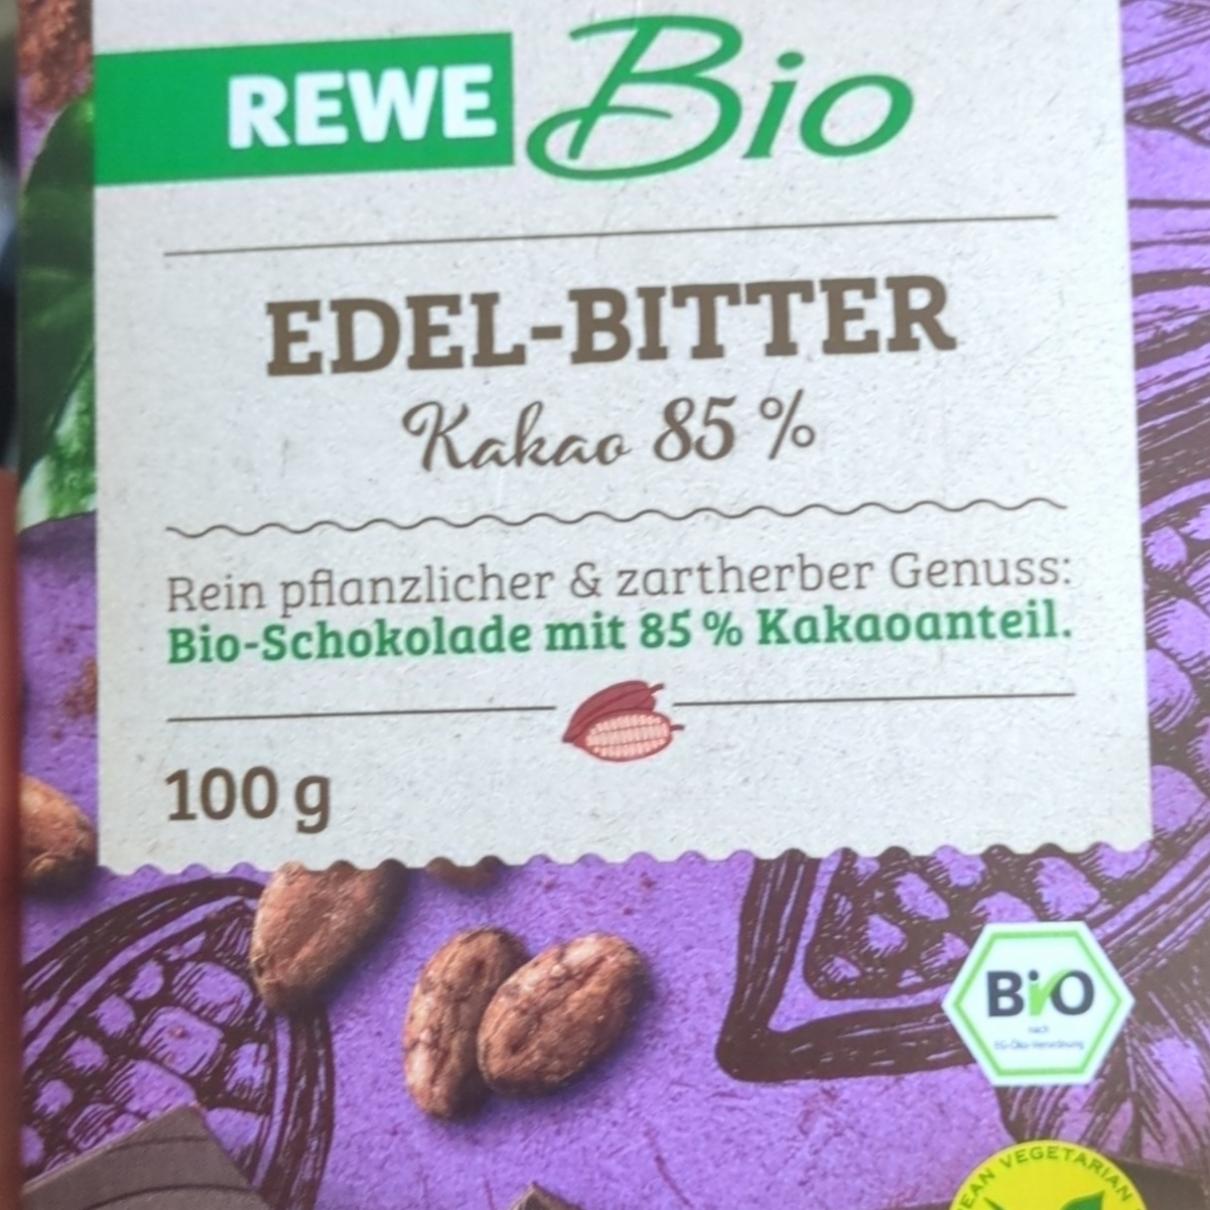 Fotografie - Edel-Bitter Kakao 85% Rewe Bio